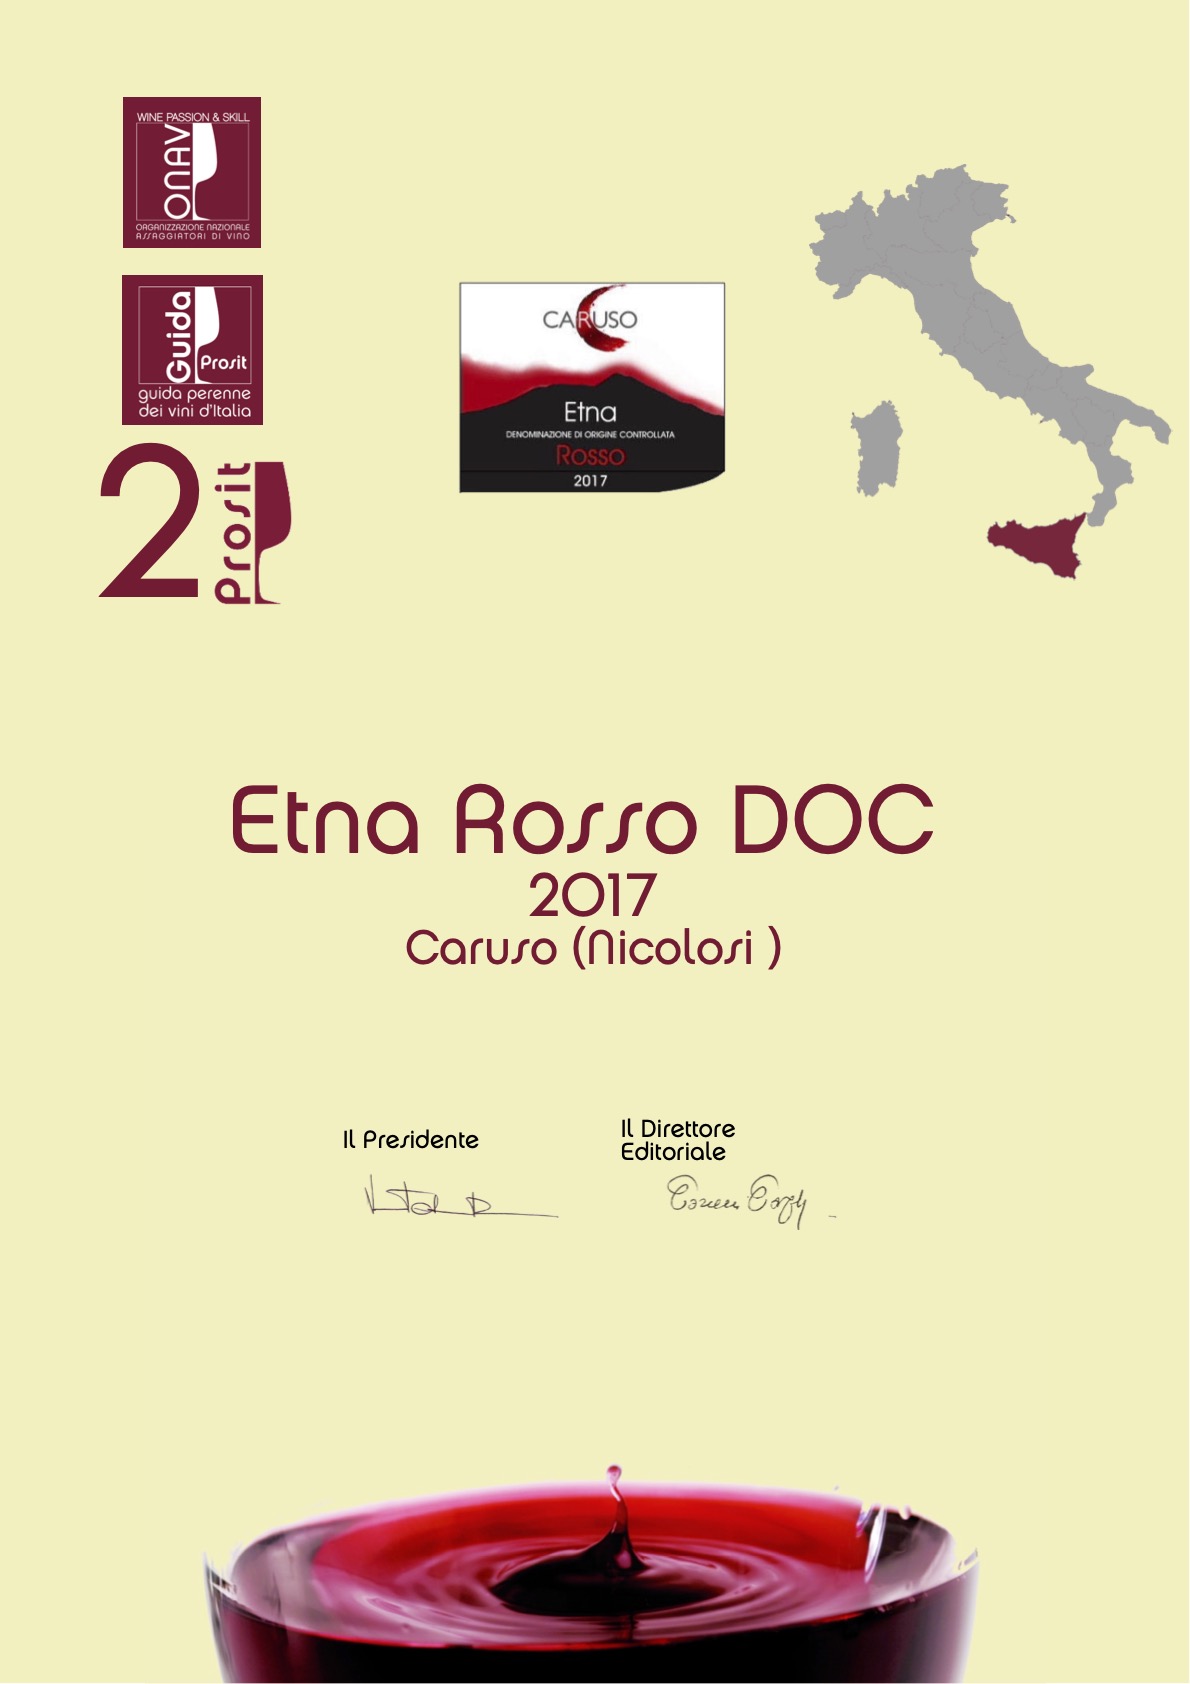 Etna Rosso DOC 2017